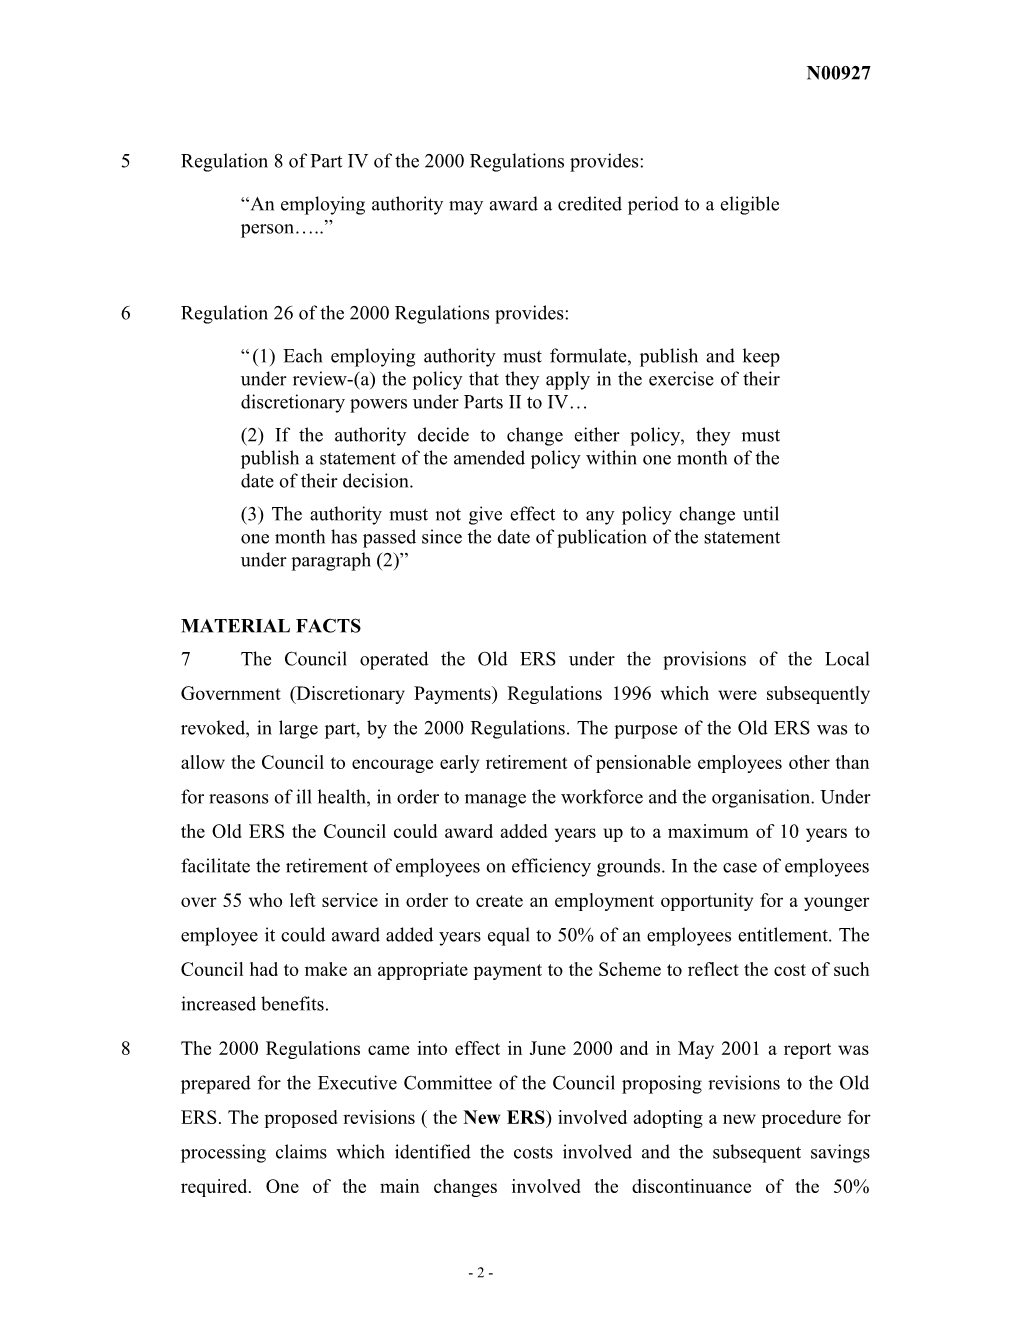 Pension Schemes Act 1993, Part X s131